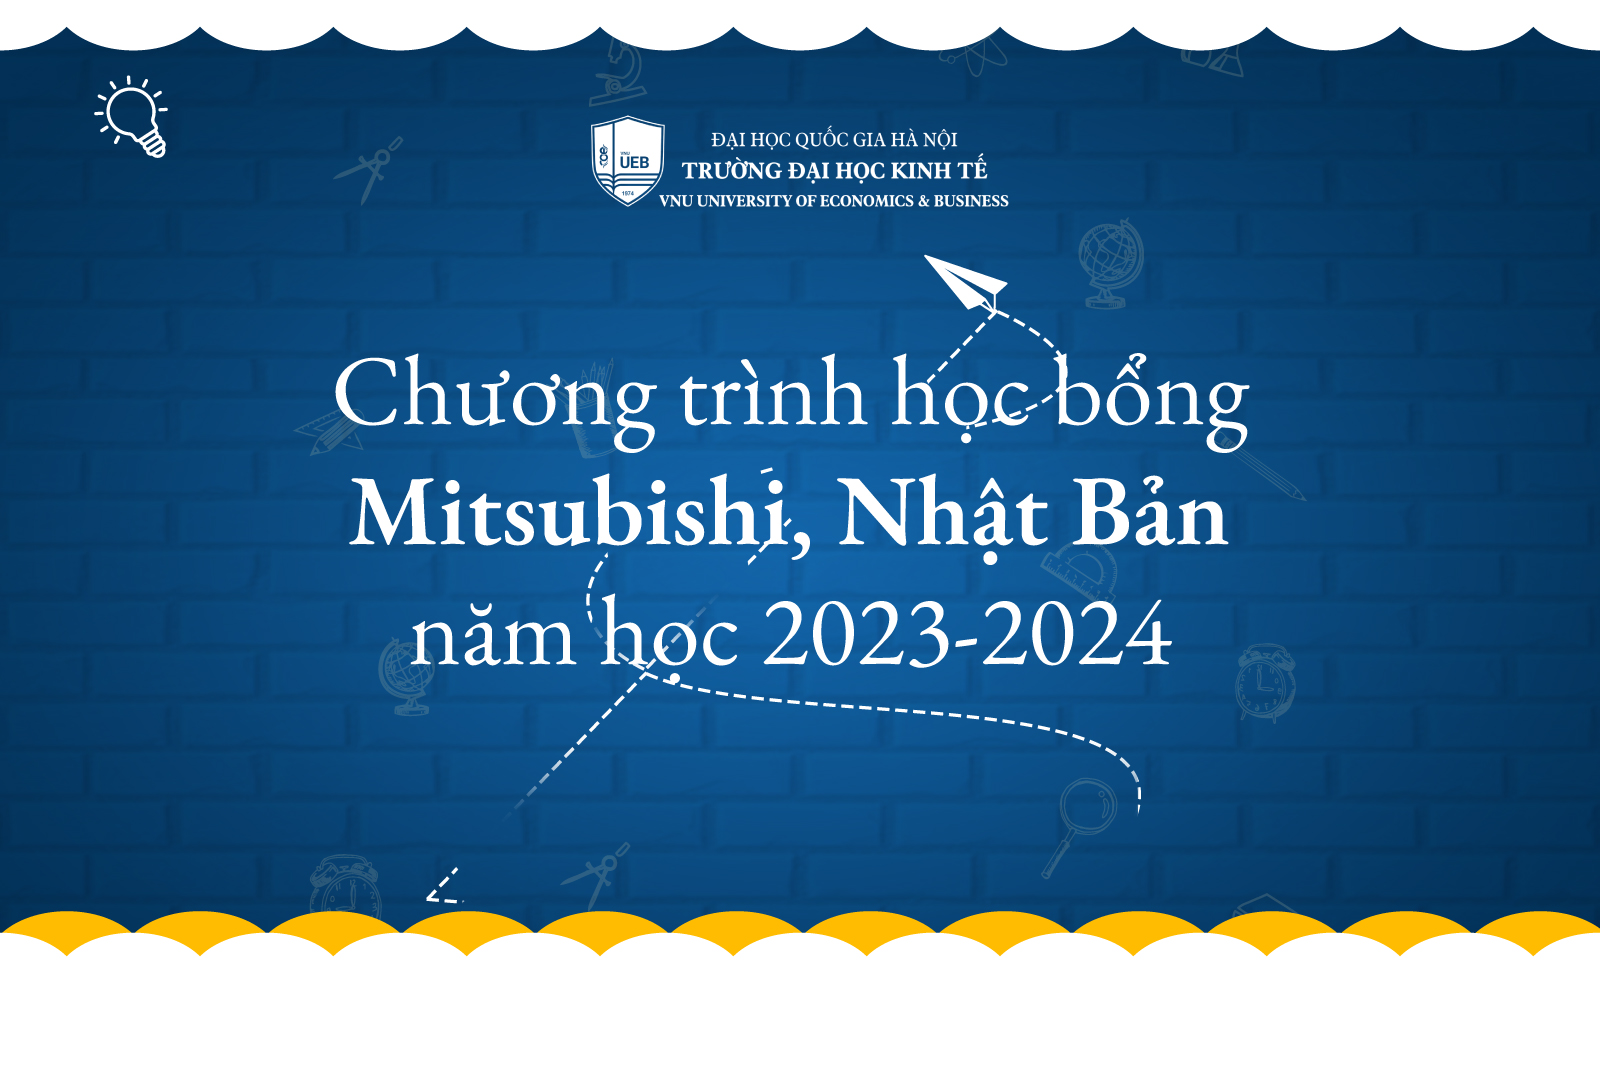 Chương trình học bổng Mitsubishi, Nhật Bản năm học 2023-2024 